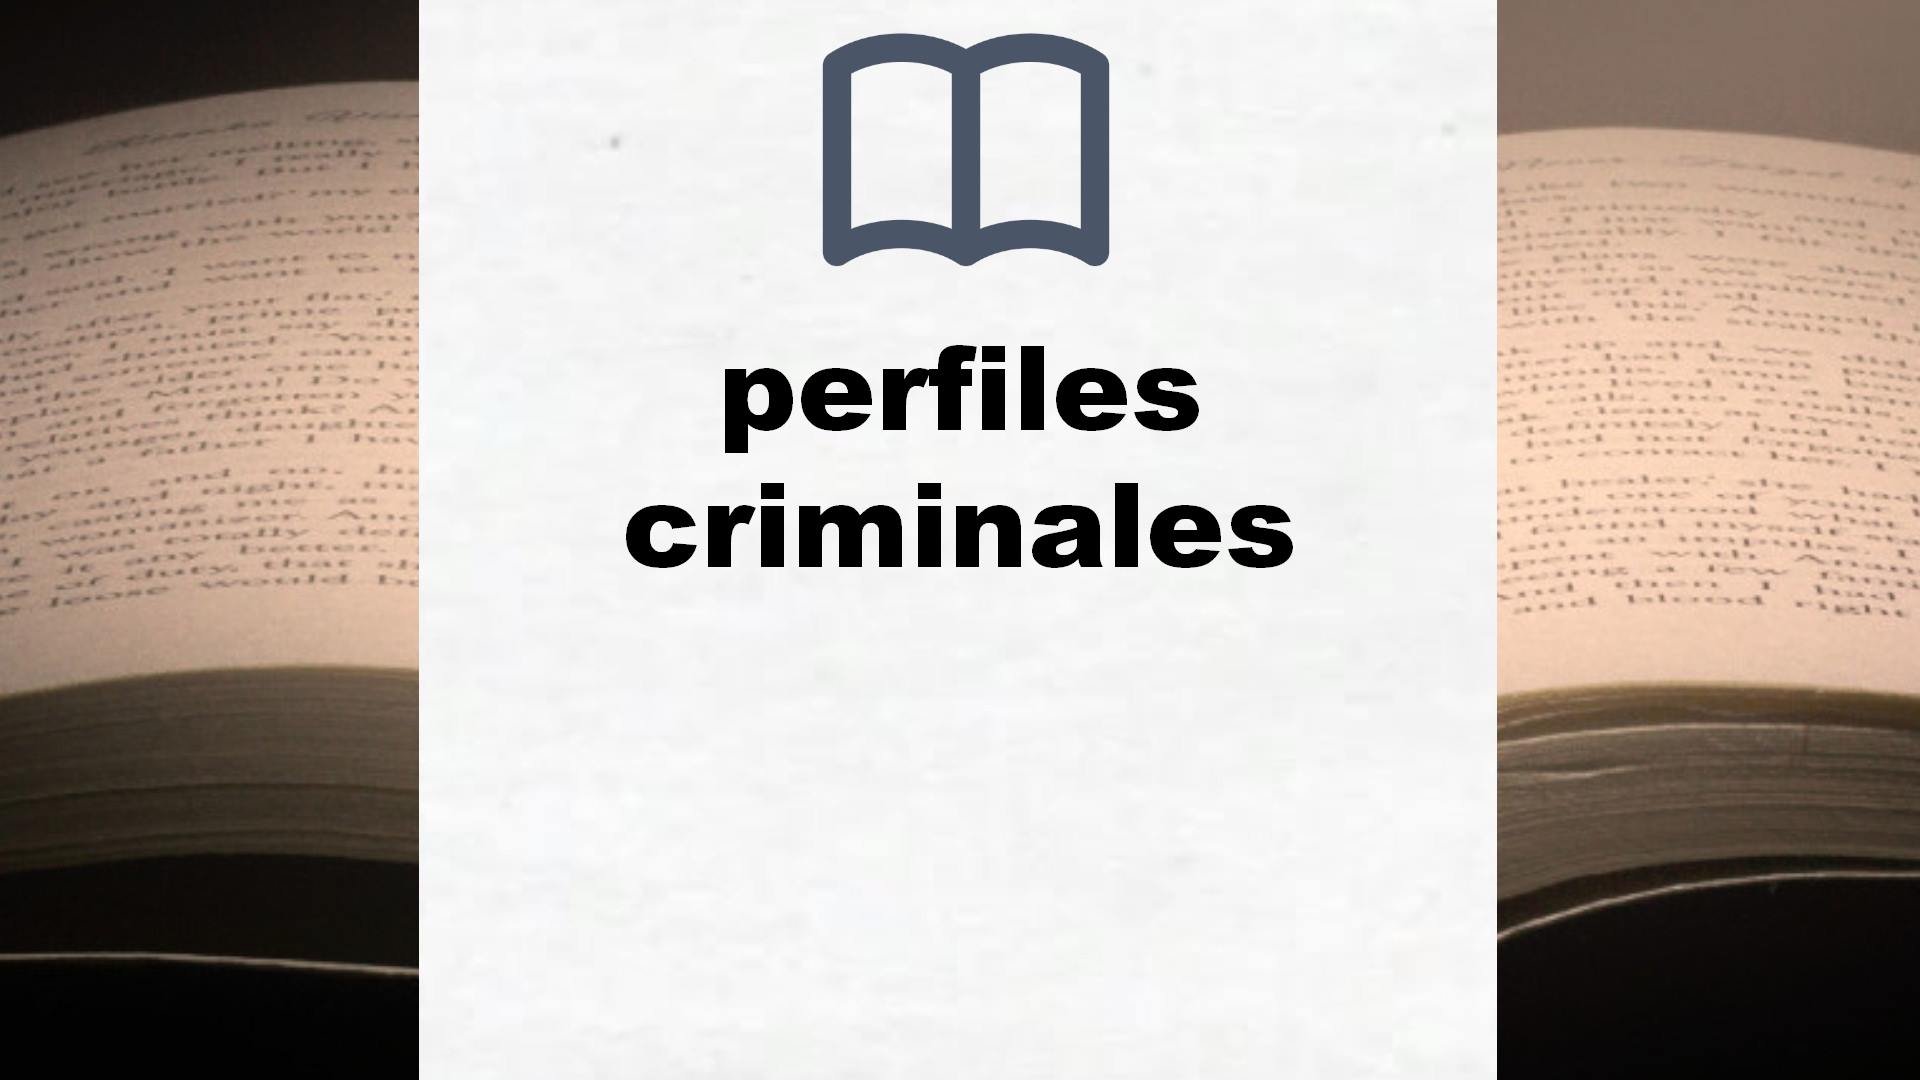 Libros sobre perfiles criminales